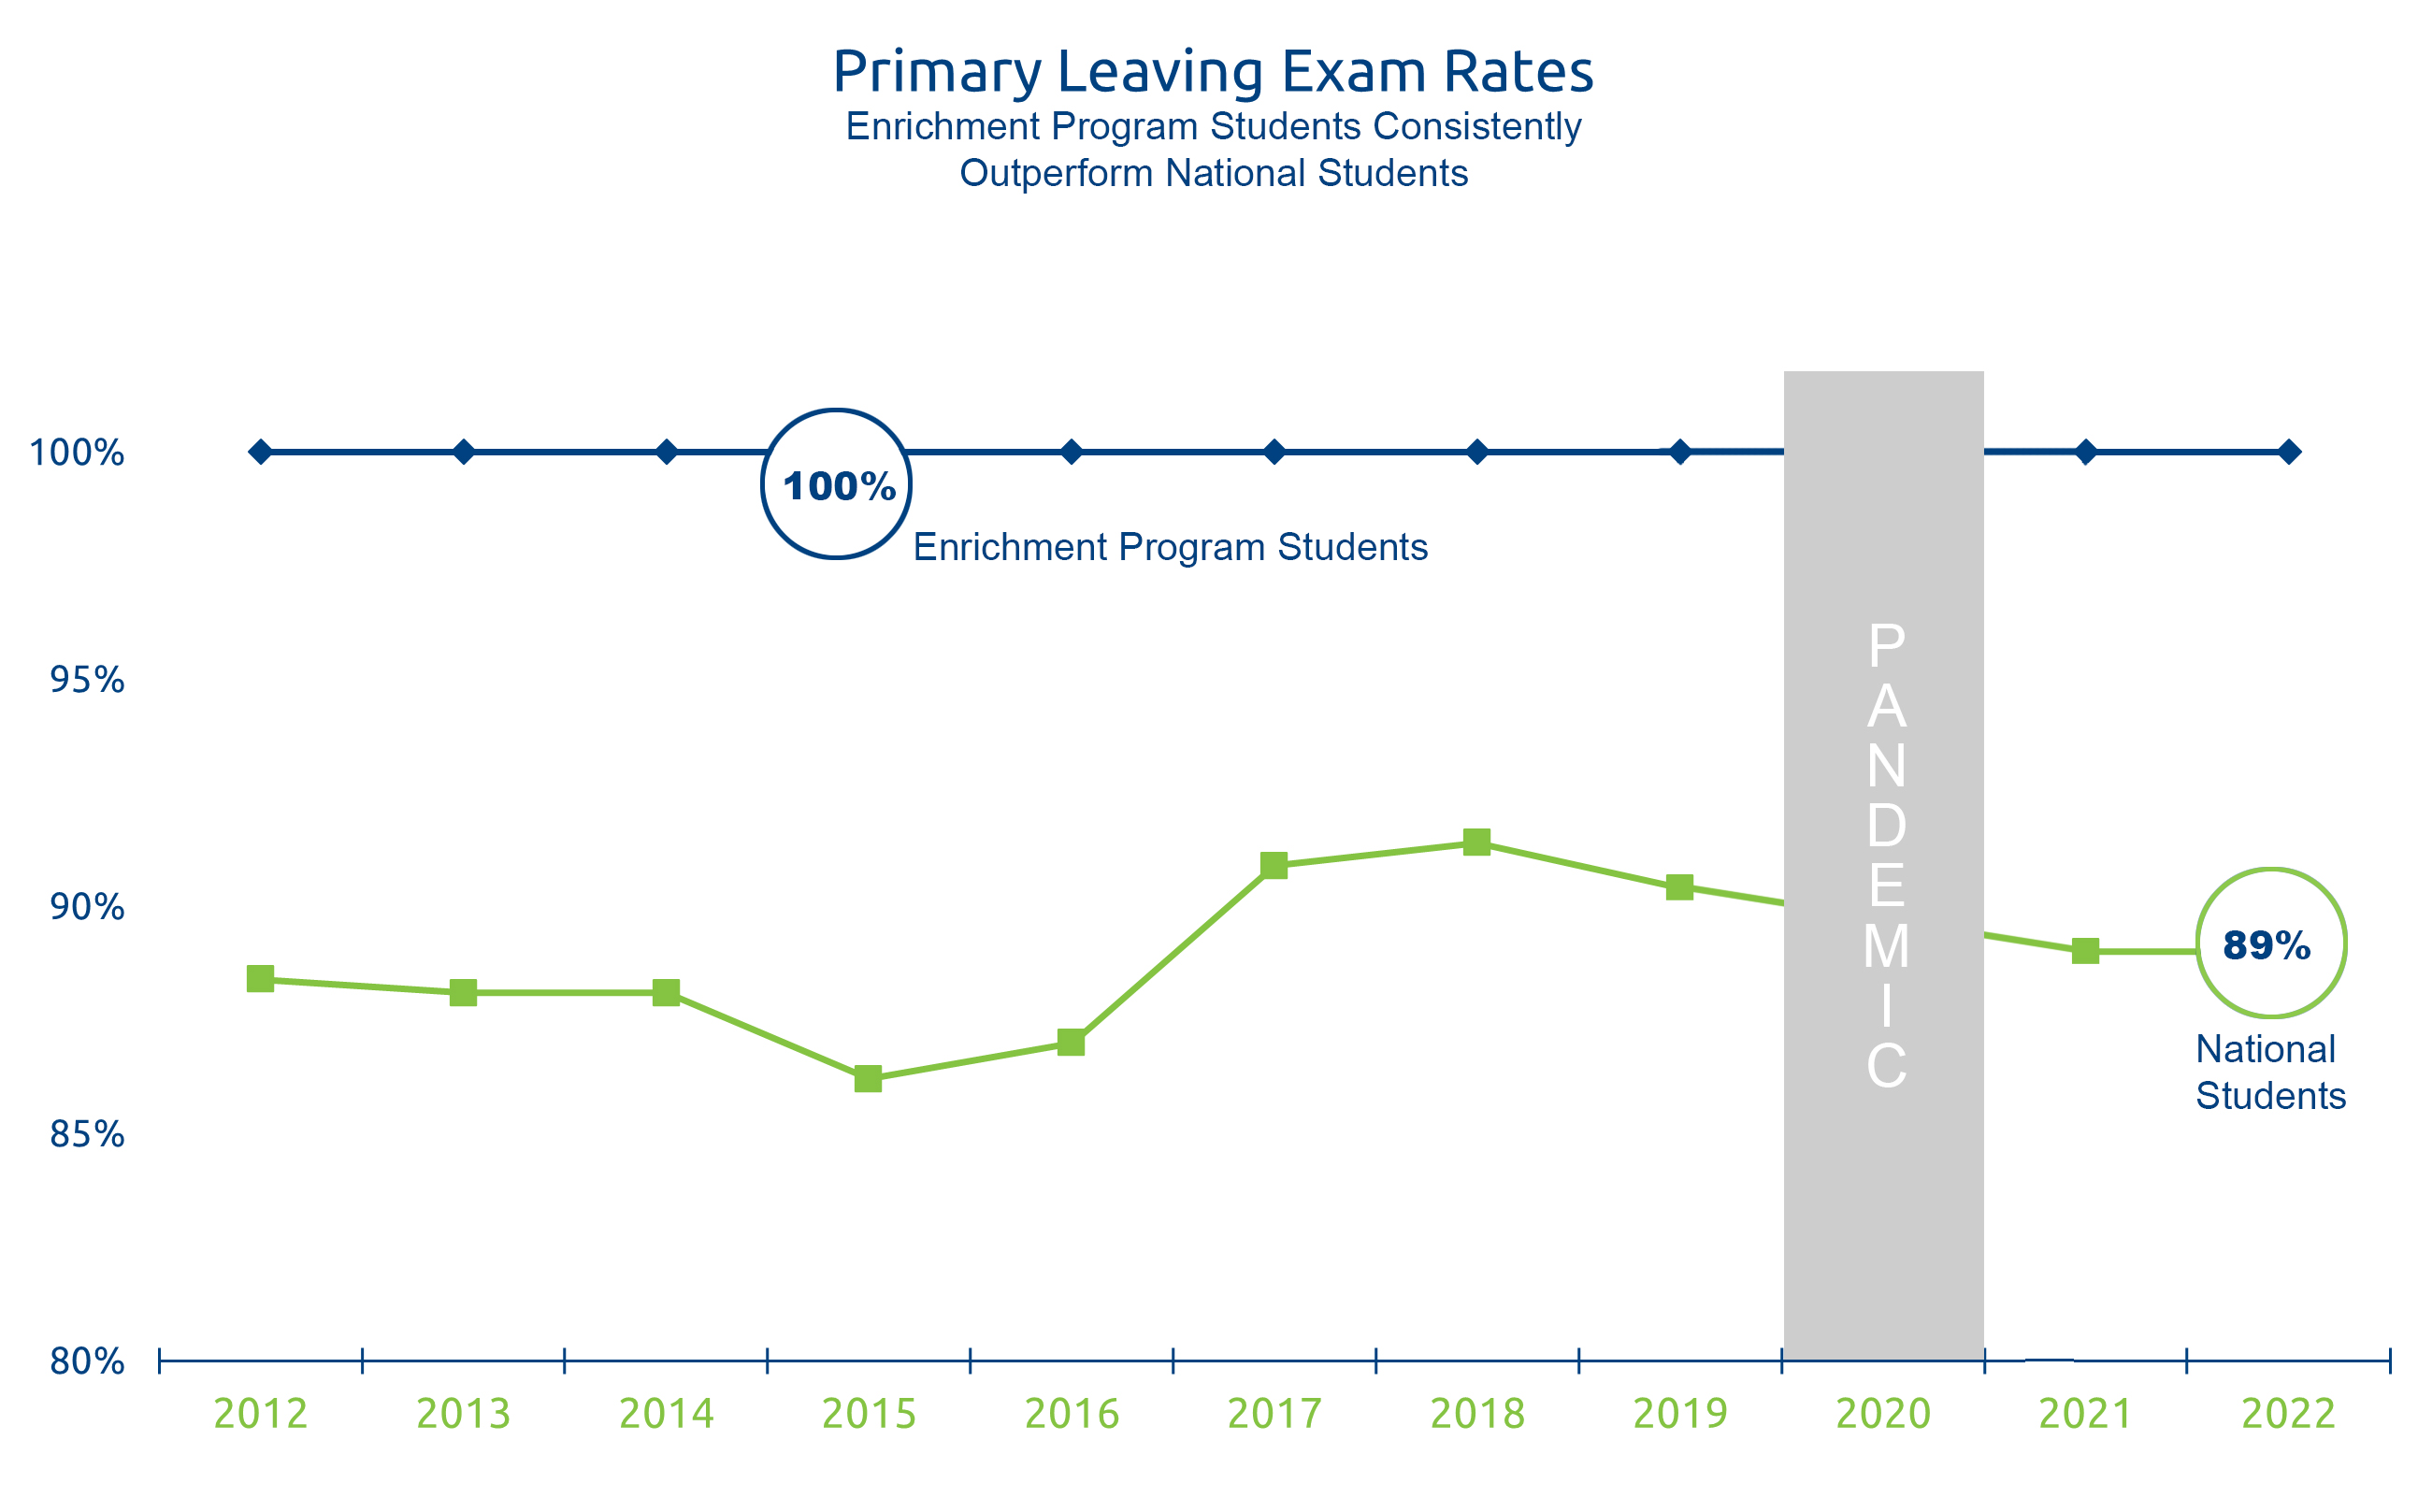 Primary Leaving Exam (PLE) -- Pass rates